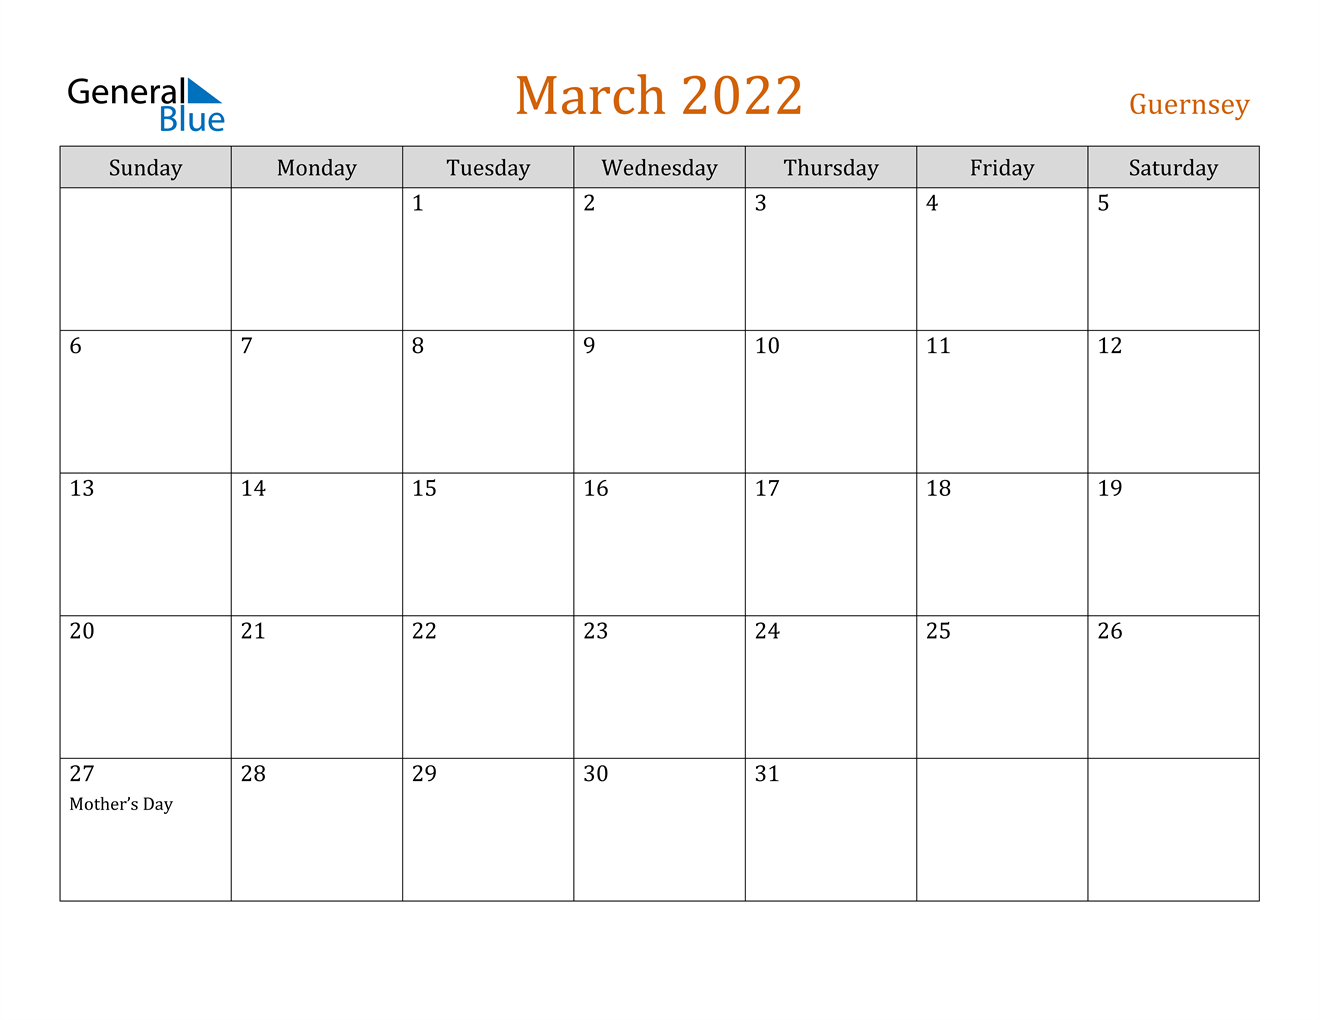 March 2022 Calendar - Guernsey